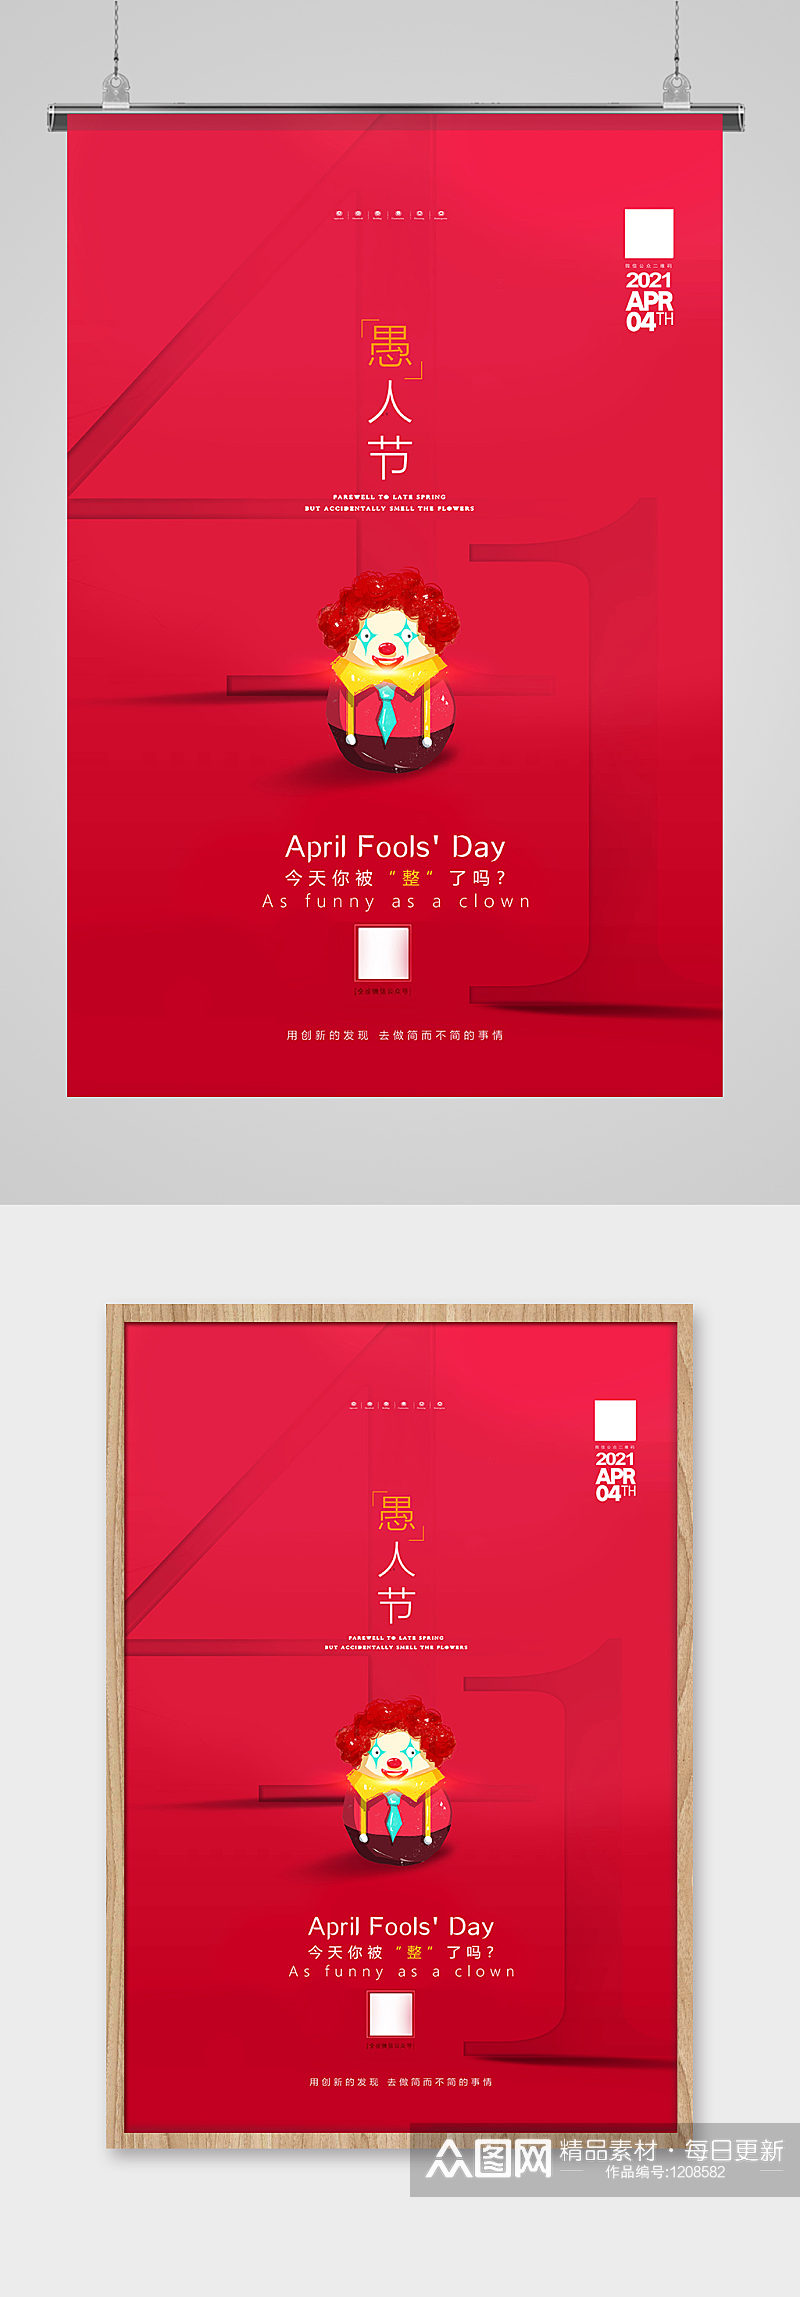 红色简洁4月1日愚人节海报设计素材